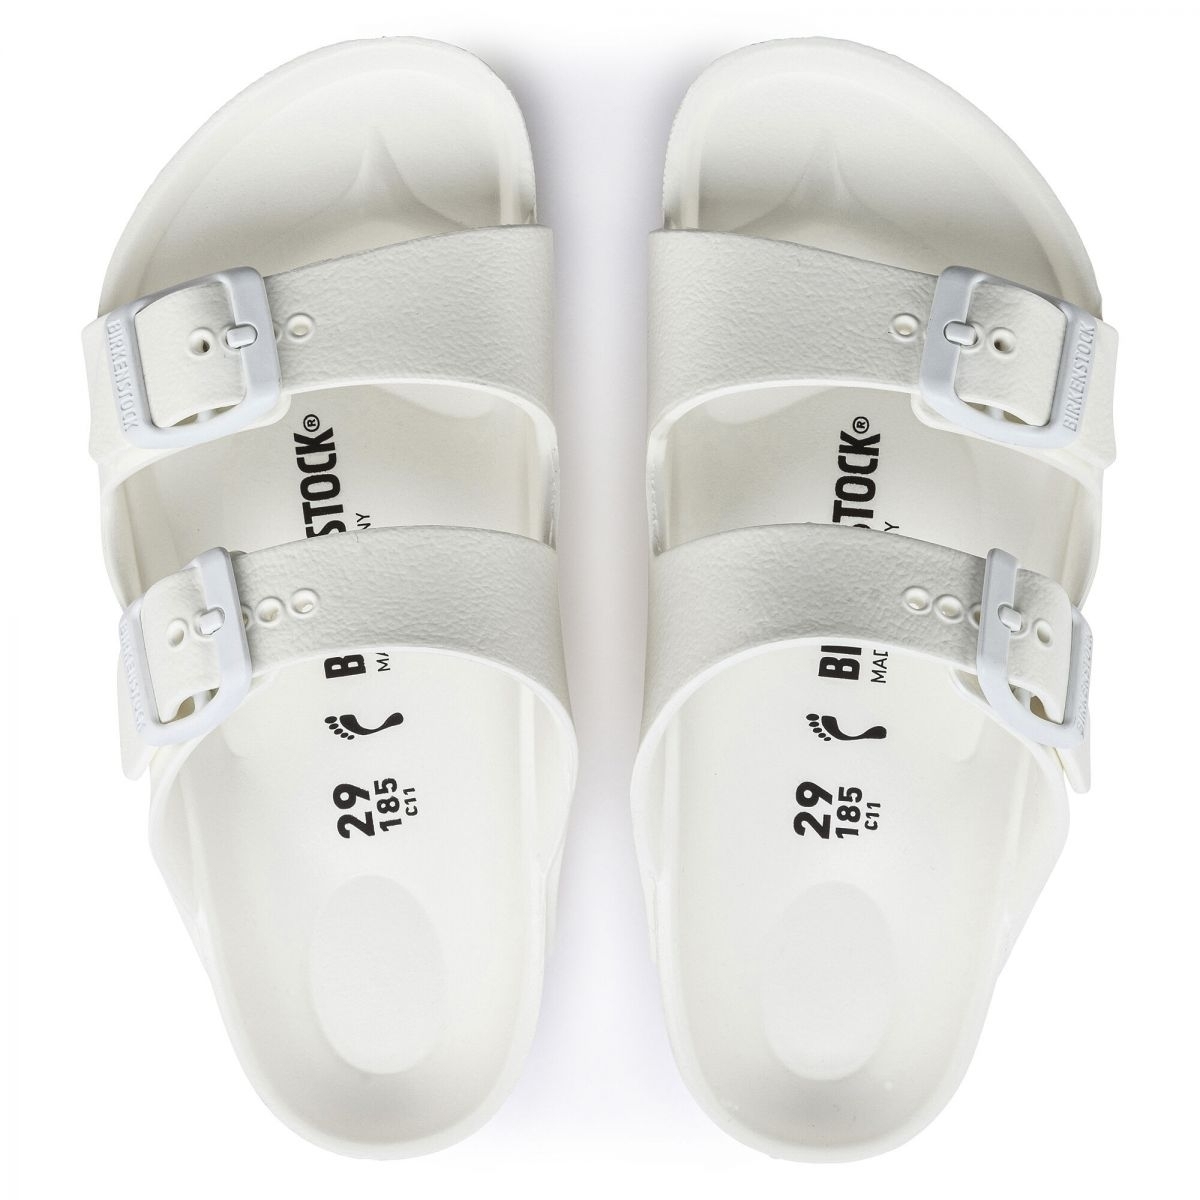 BIRKENTSOCK Kids' Unisex Arizona Essential White EVA Sandal - 1018941 WHITE - WHITE, 10-10.5 Narrow Toddler